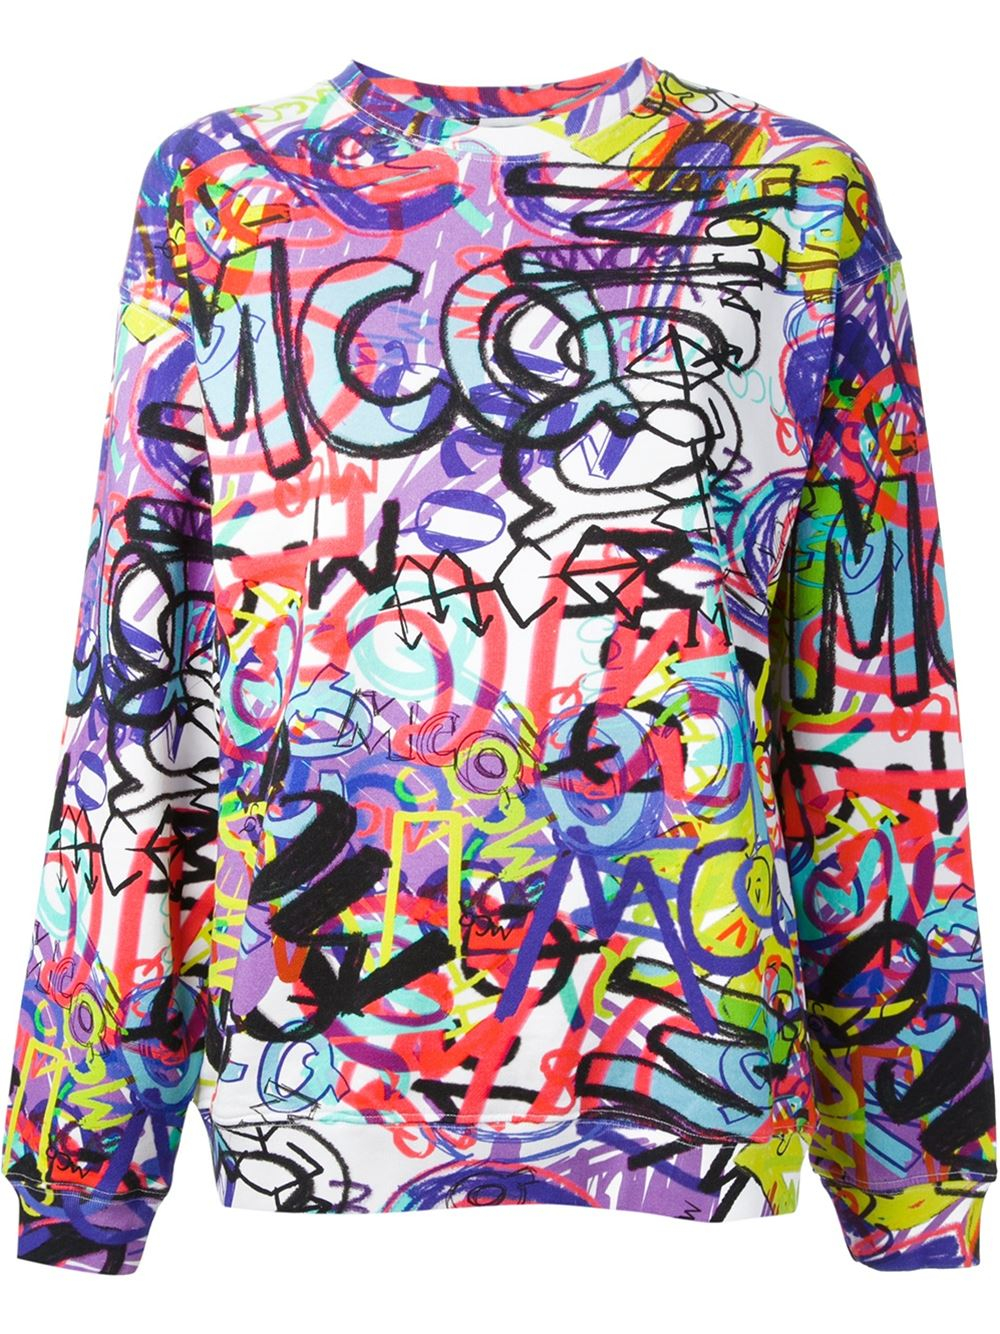 Lyst - Mcq Graffiti Print Sweatshirt